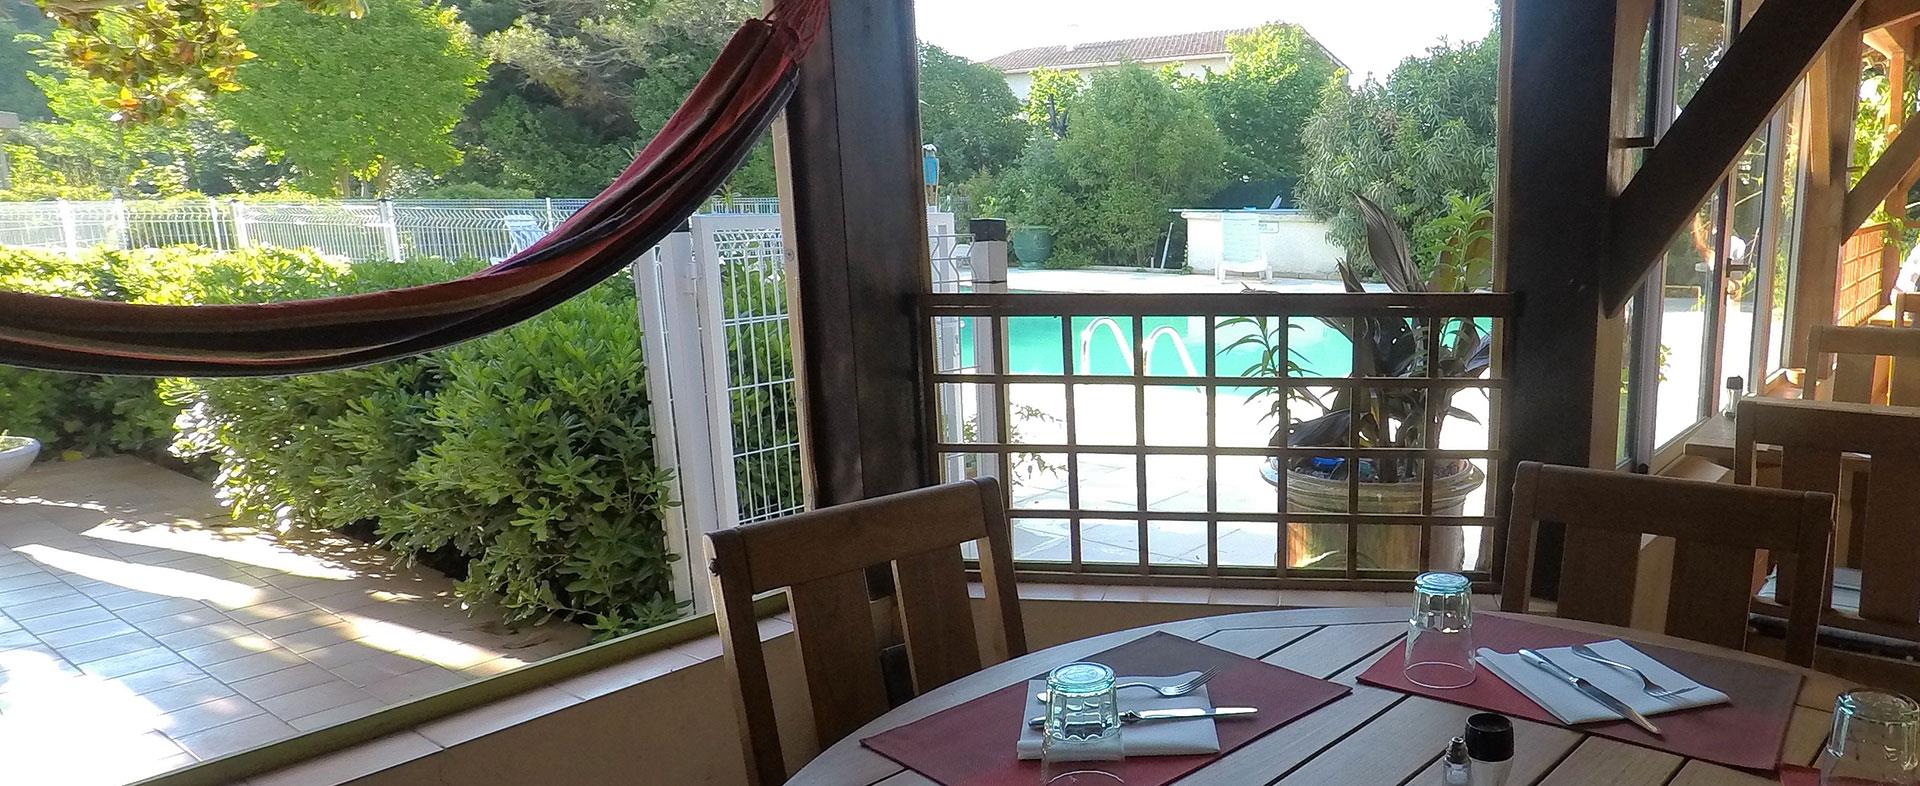 Terrasse aux bords de la piscine de l'Hôstellerie Saint benoit, hôtel à Aniane